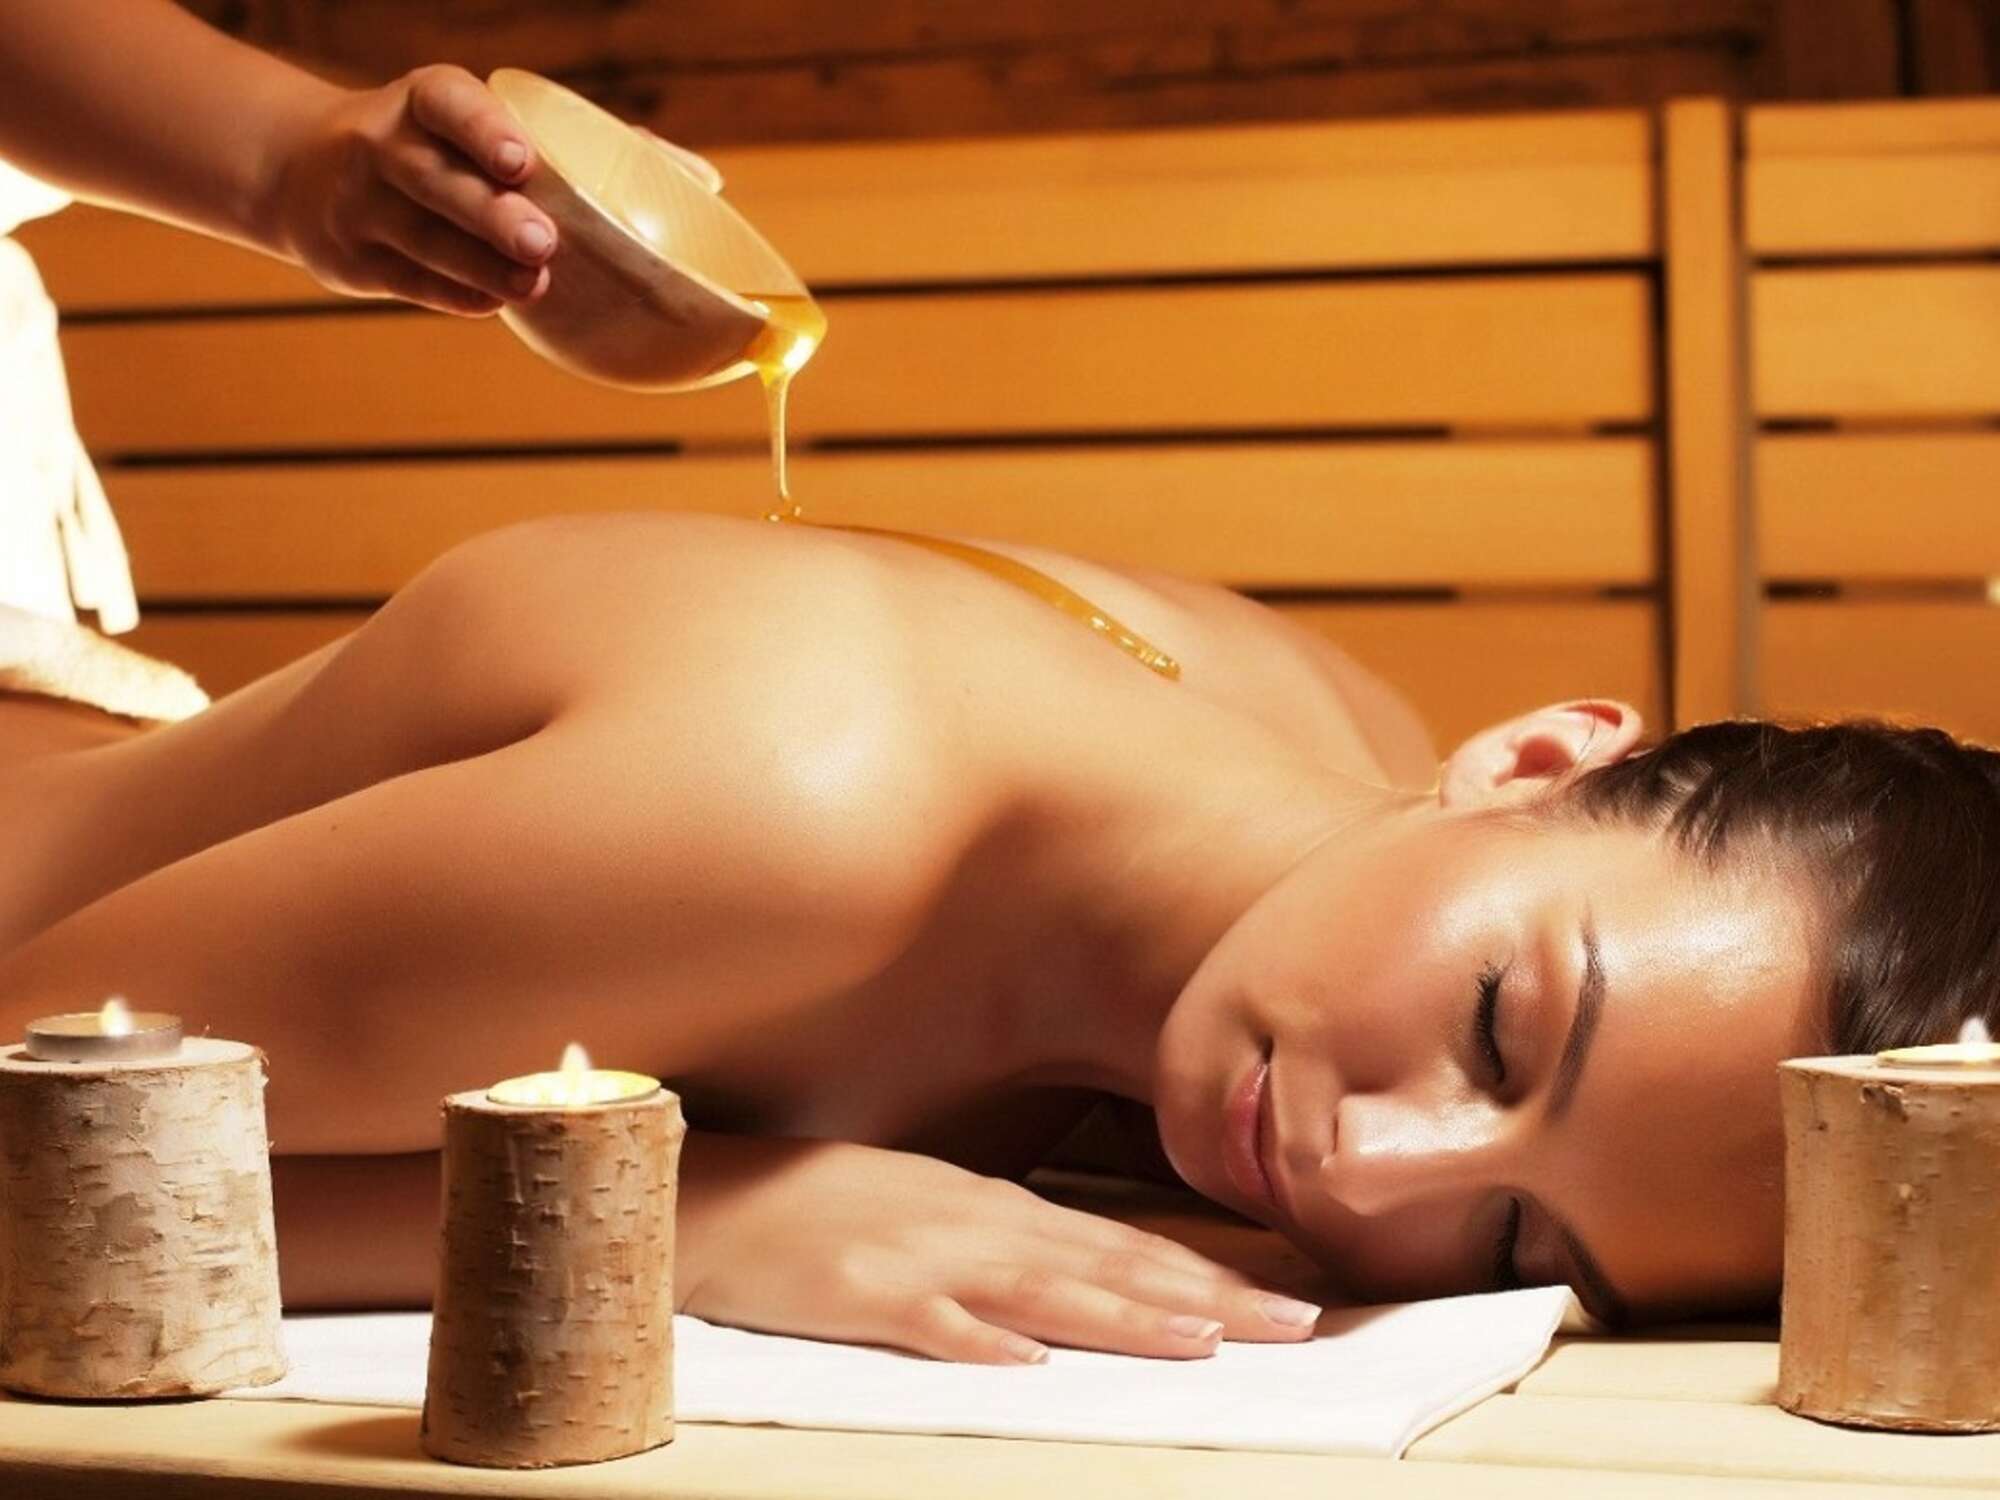 Густой мед для бани «Антицеллюлитный» «Фито Баня»